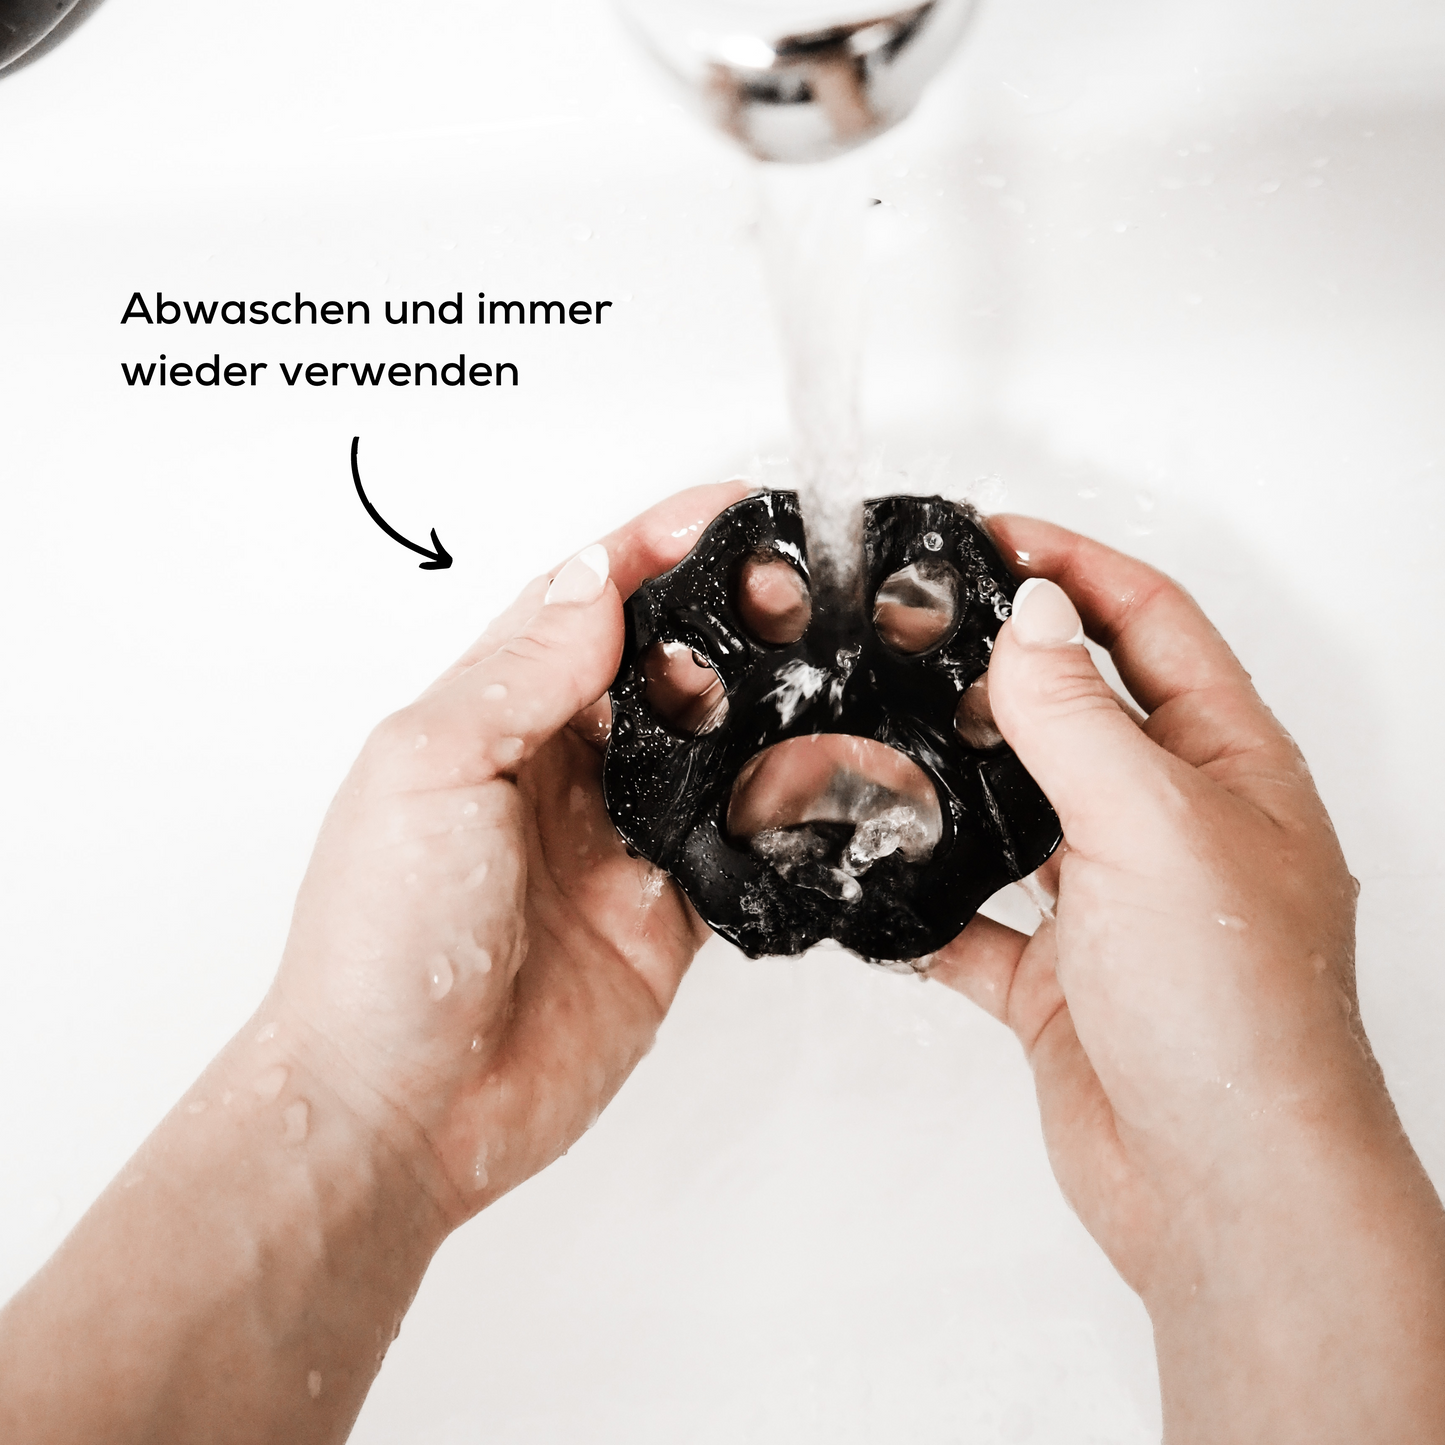 Wiederverwendbarer Haarentferner zum Entfernen von Tierhaaren wird unter dem Wasserhahn abgewaschen.